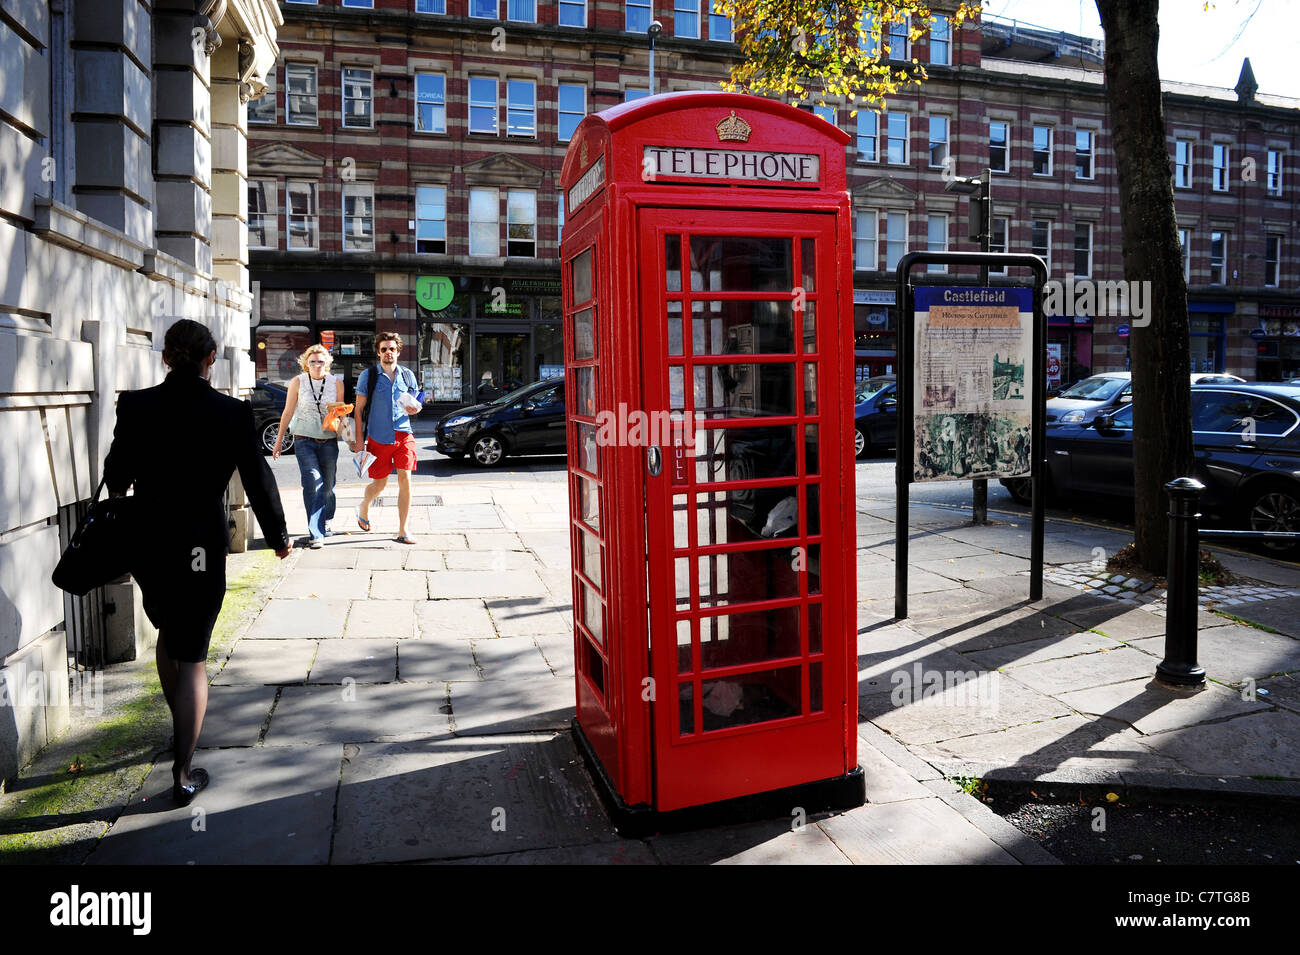 La traditionnelle boîte de téléphone rouge, St John's Street, Manchester, Angleterre. Photo par Paul Heyes, mercredi 28 septembre 2011 Banque D'Images